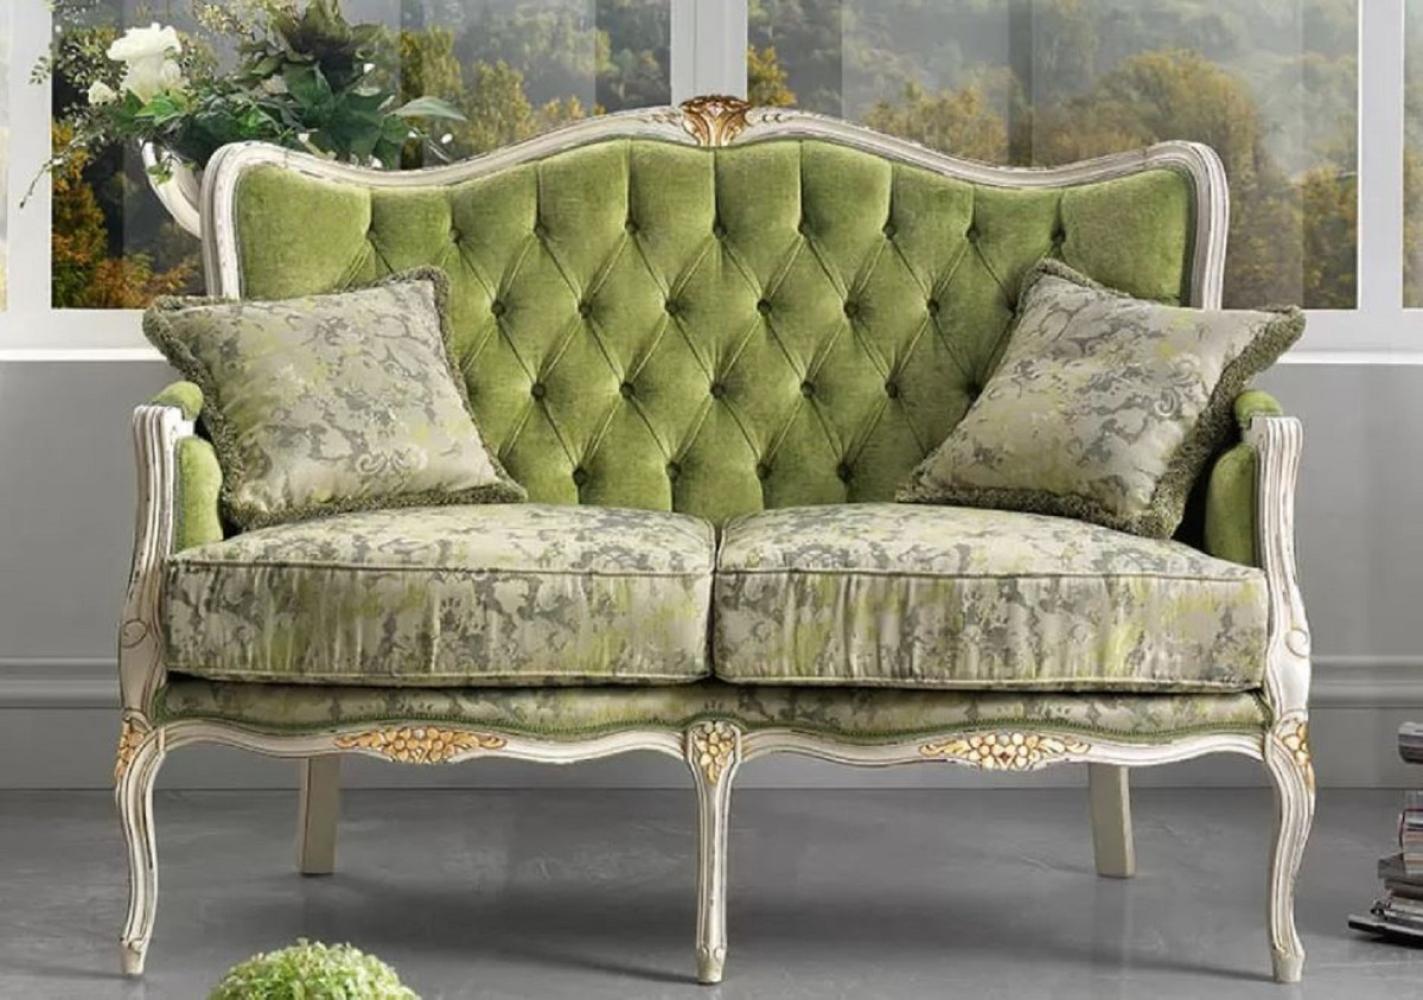 Casa Padrino Luxus Barock Sofa Grün / Weiß / Gold - Edles Wohnzimmer Sofa mit elegantem Muster und 2 dekorativen Kissen - Barock Möbel - Luxus Qualität - Made in Italy Bild 1